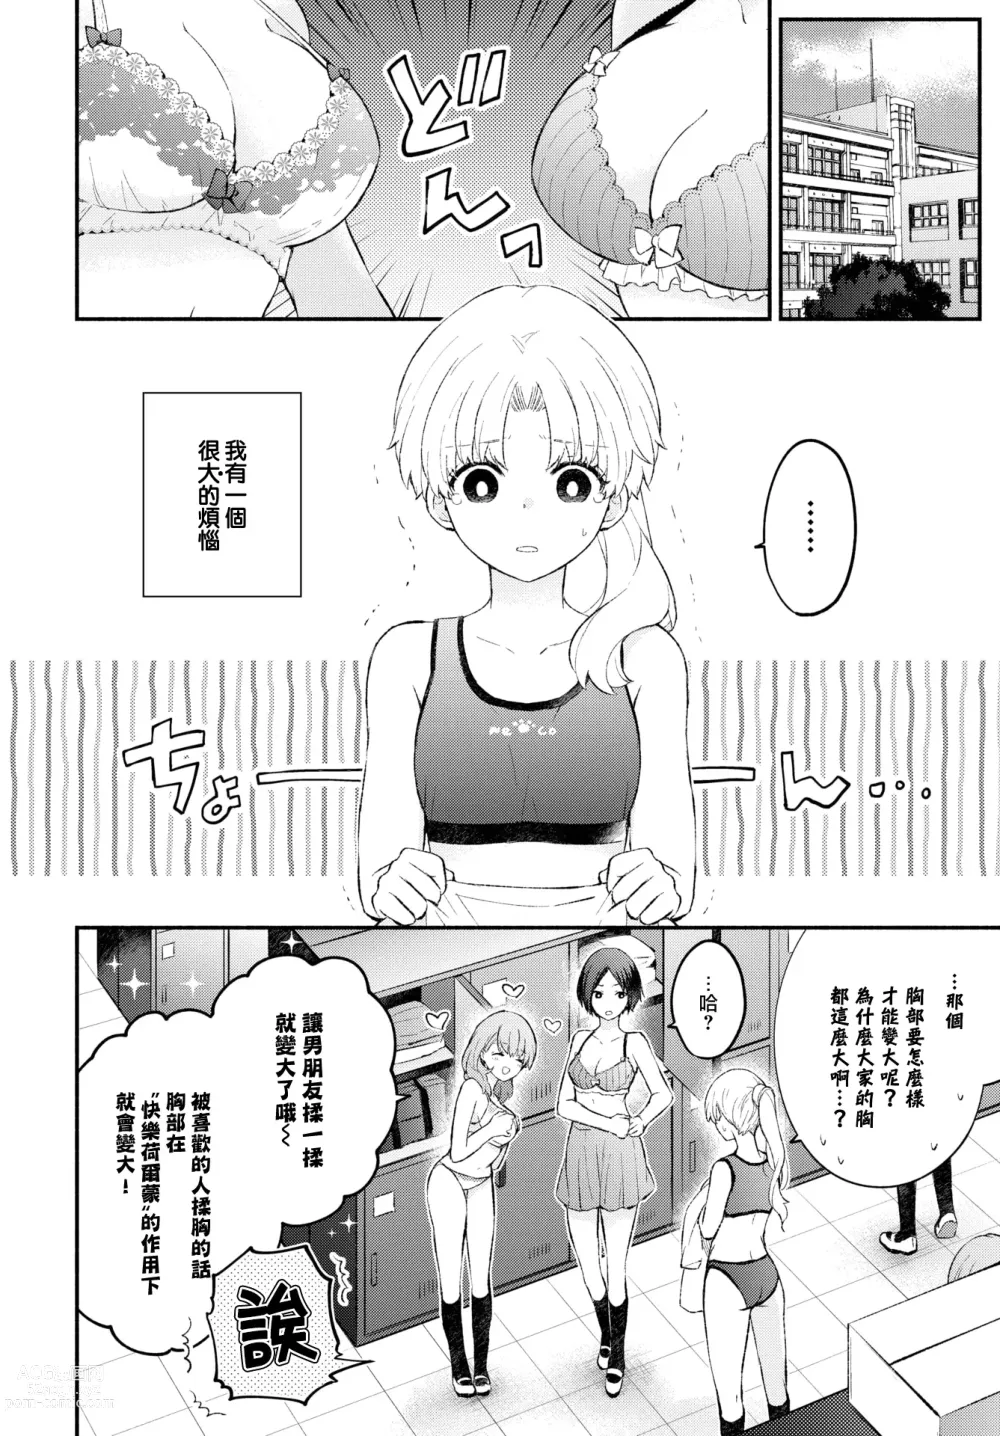 Page 3 of manga Petanko Kanojo